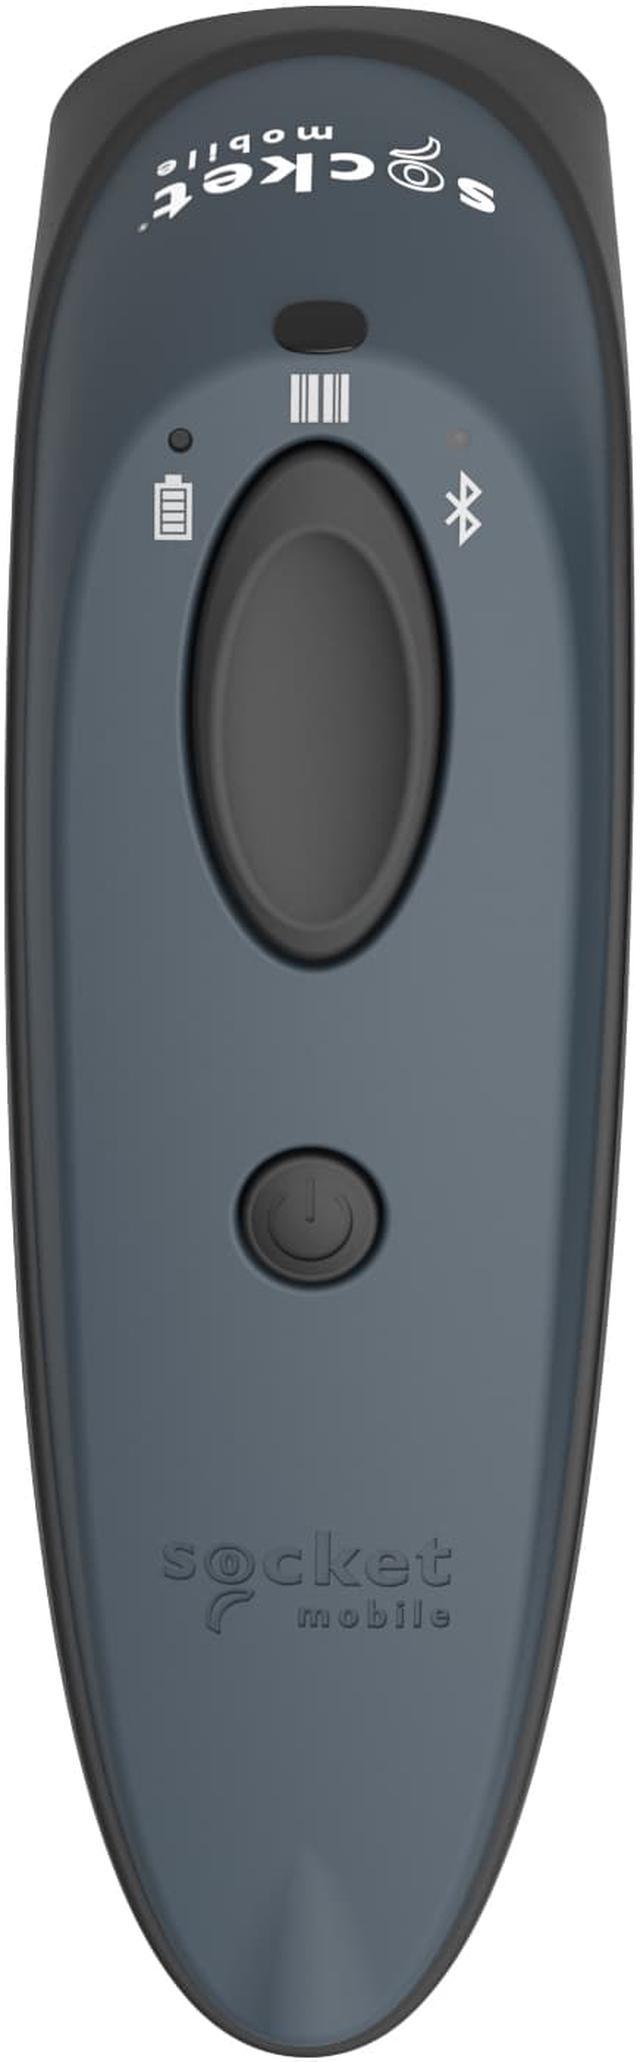 socket mobile D700 グレー